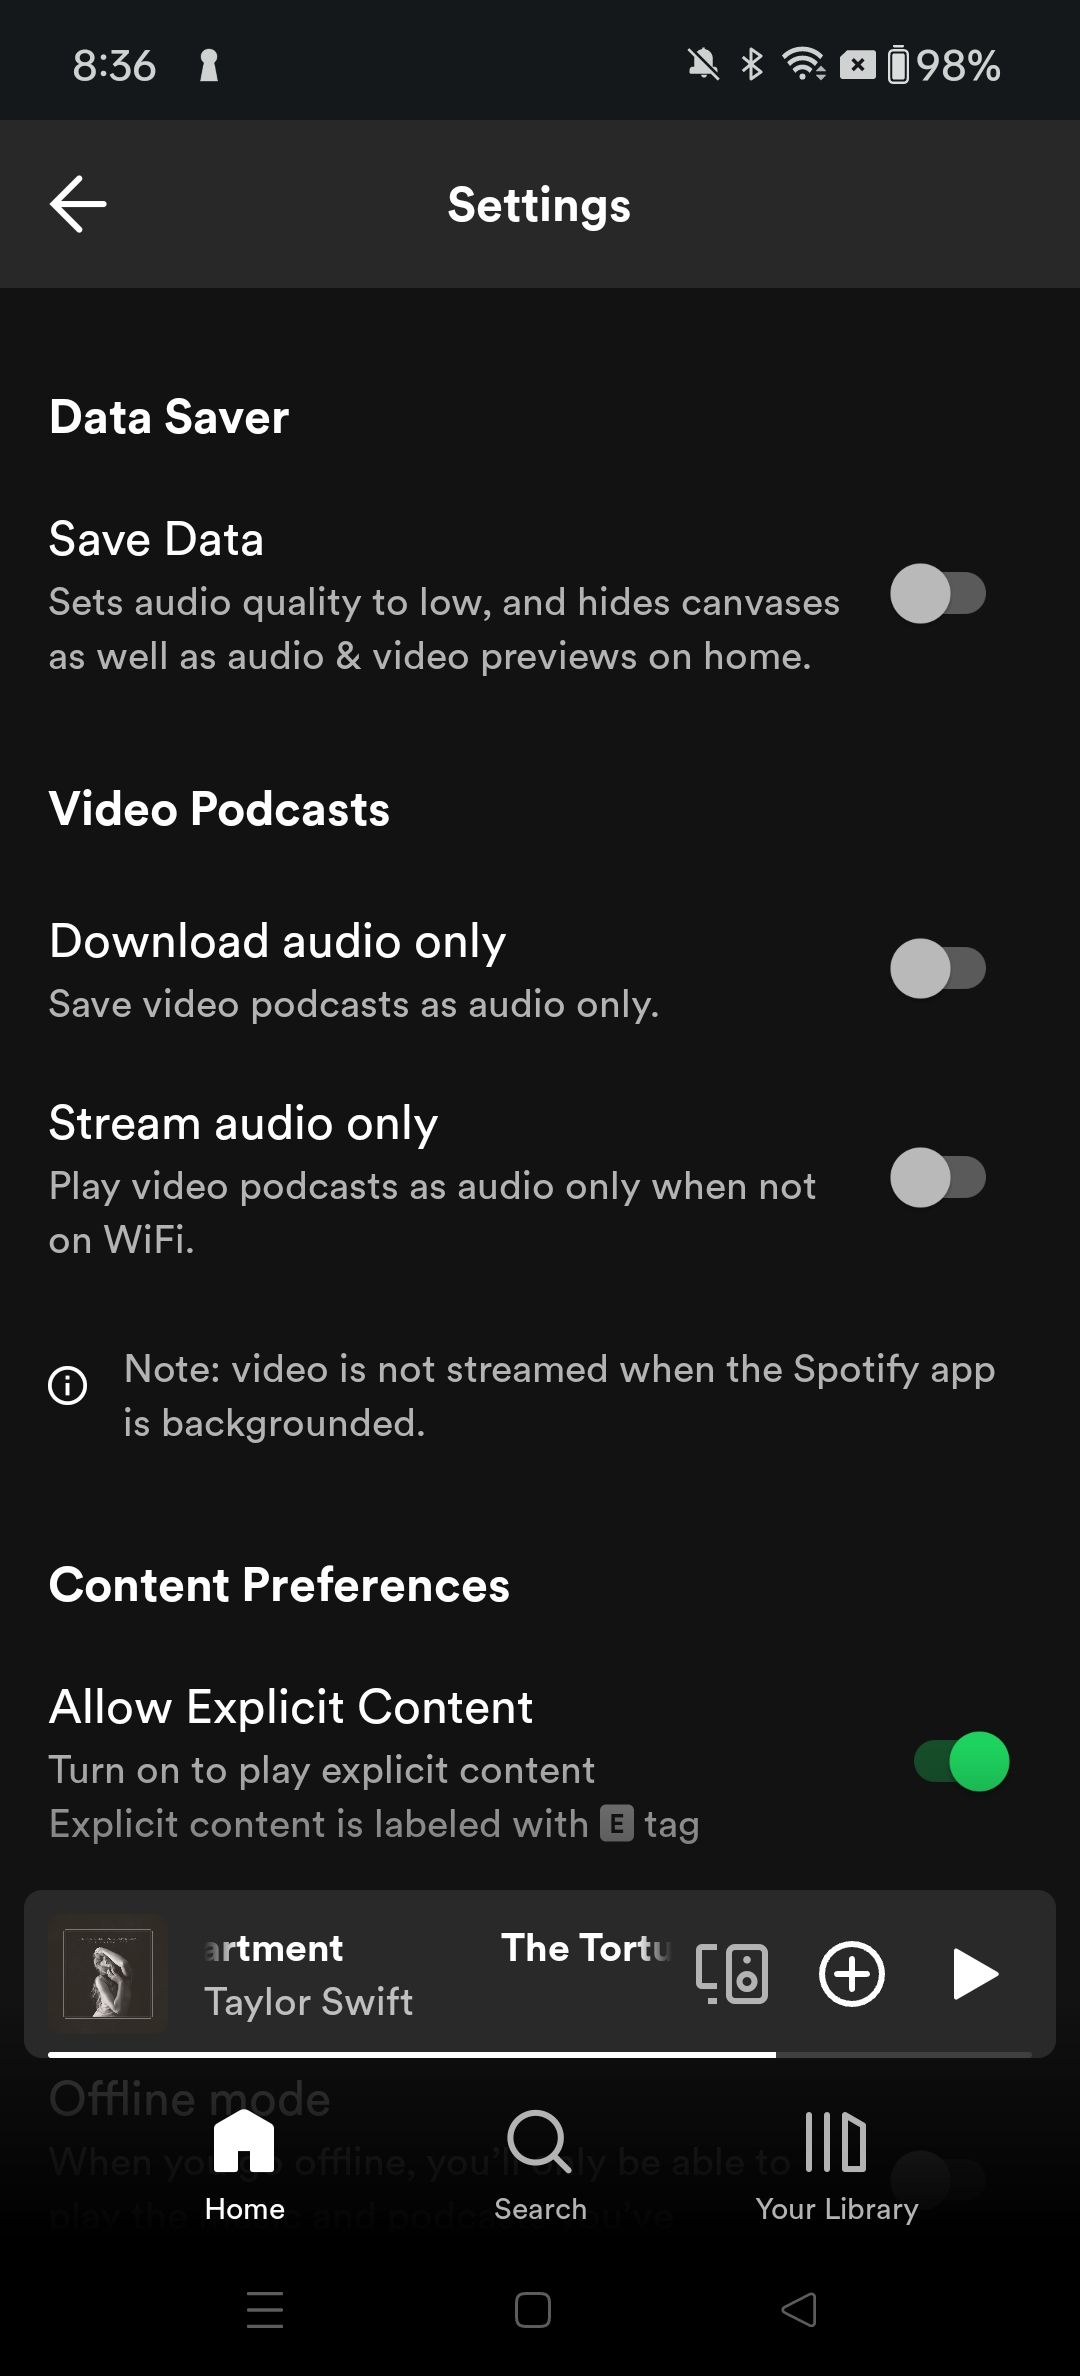 Spotify-andorid settings layout